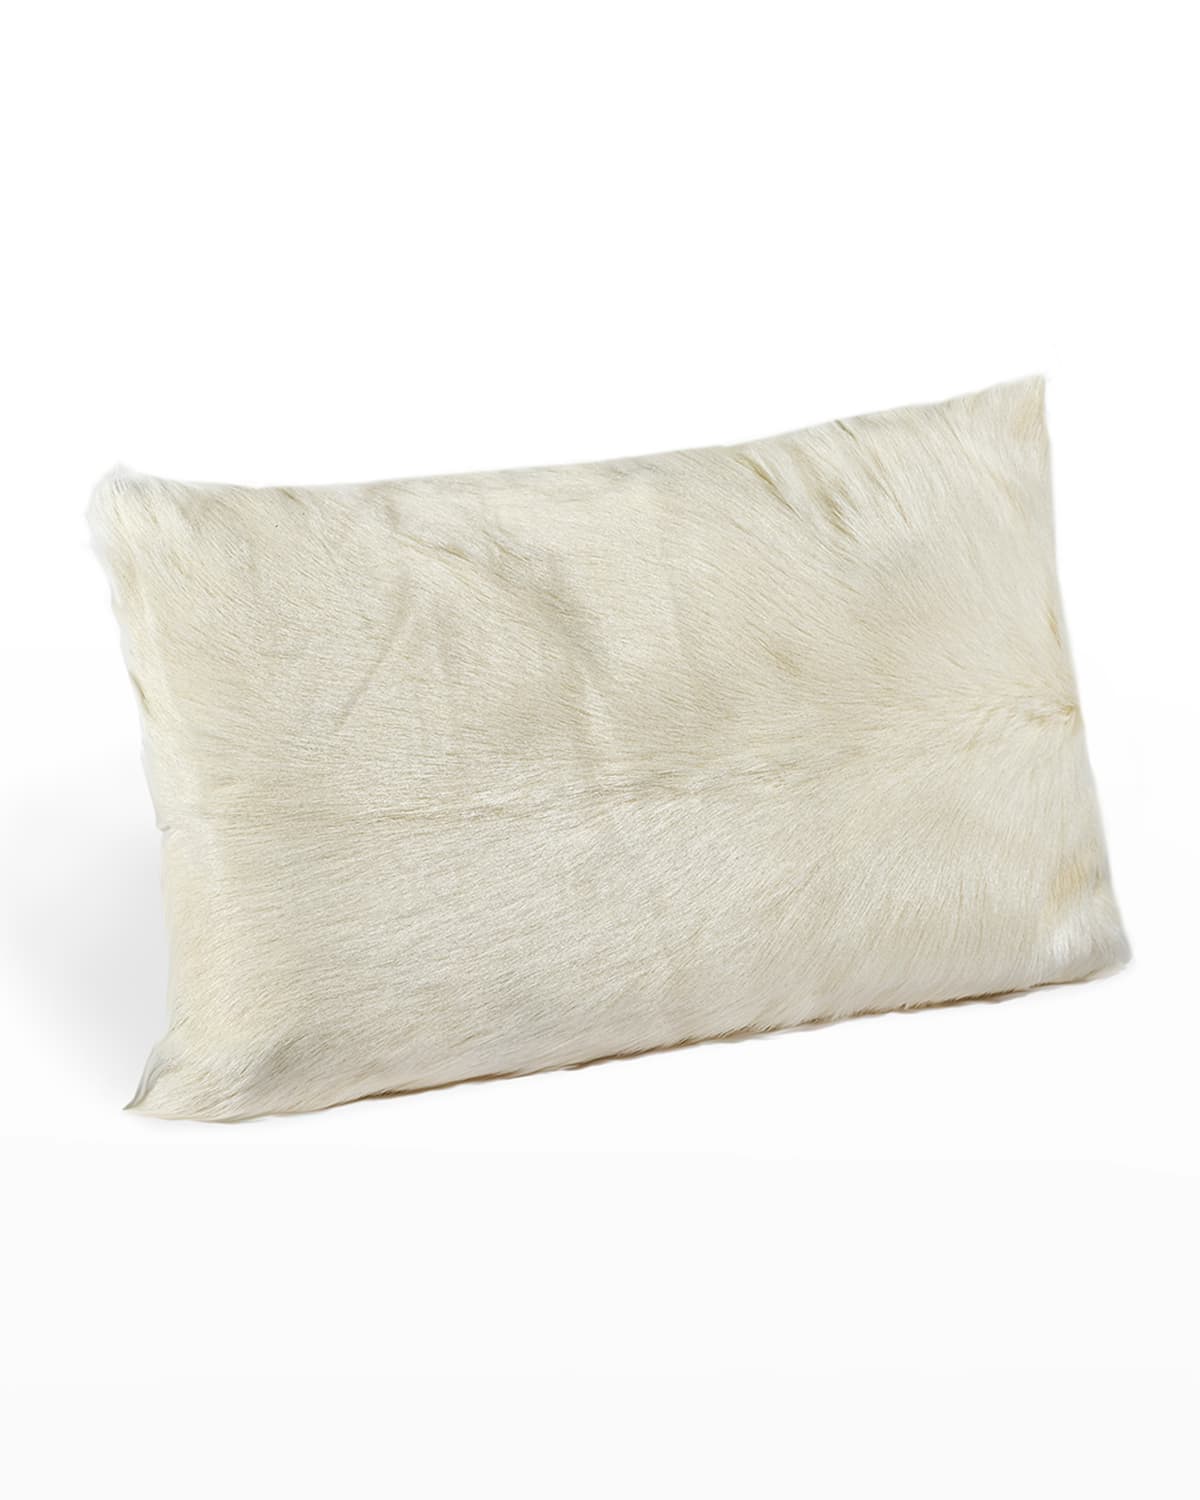 Interlude Home Lambskin Bolster Pillow